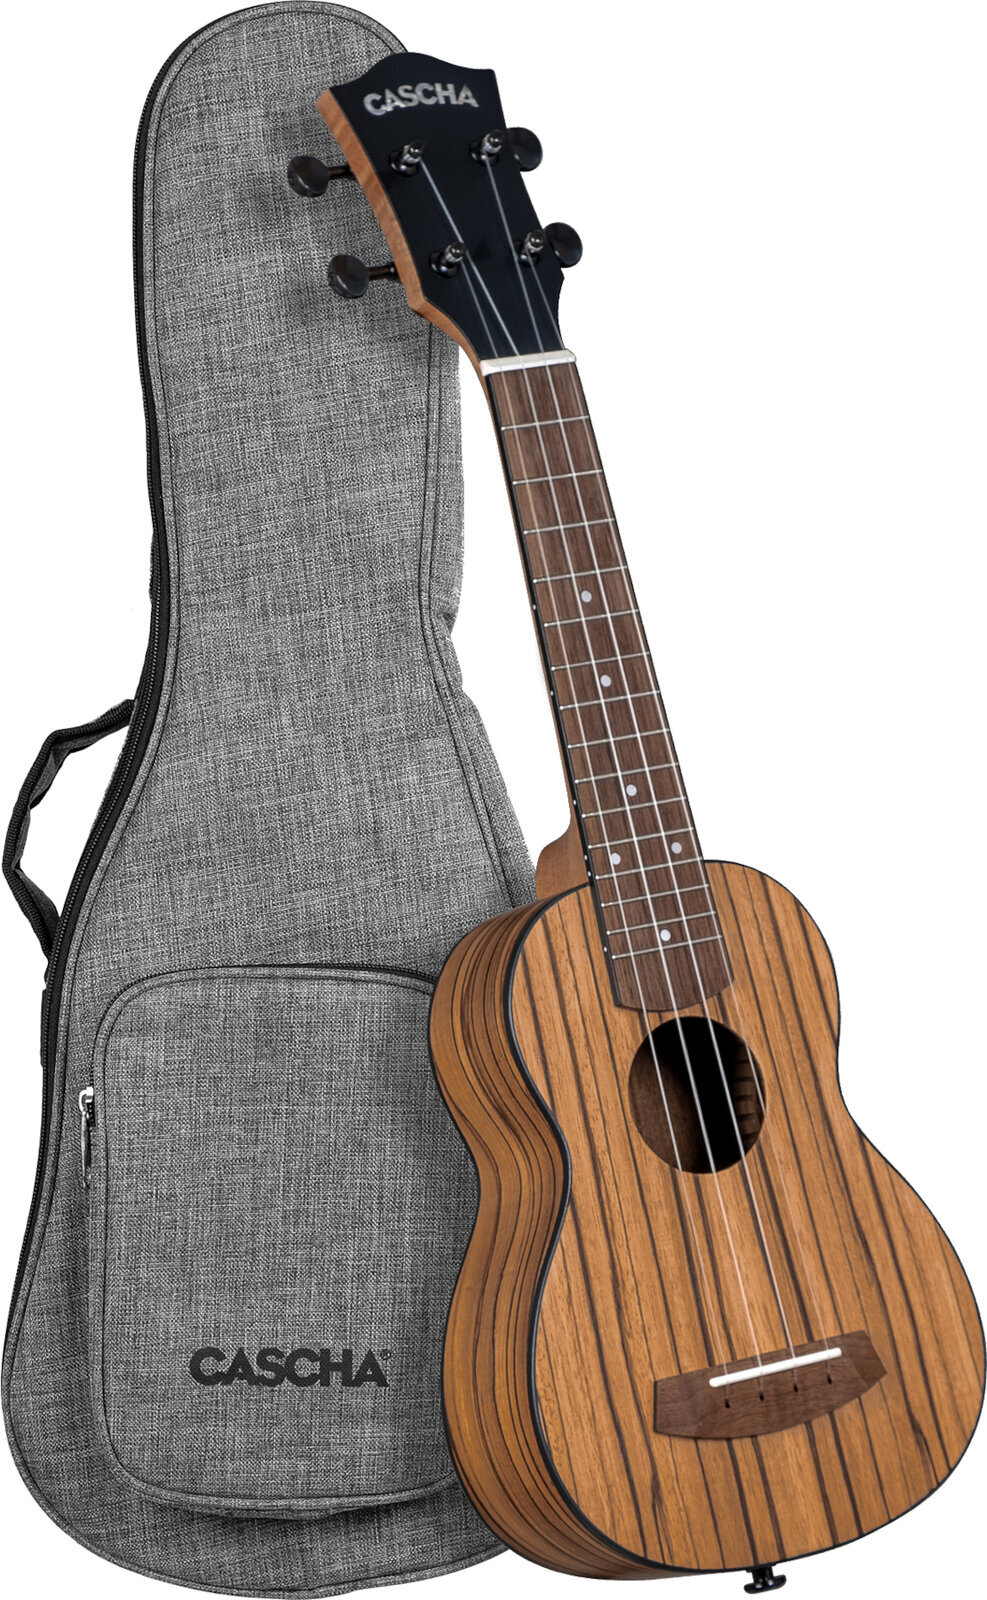 Sopran ukulele Cascha Soprano Ukulele Zebra Wood Sopran ukulele Natural